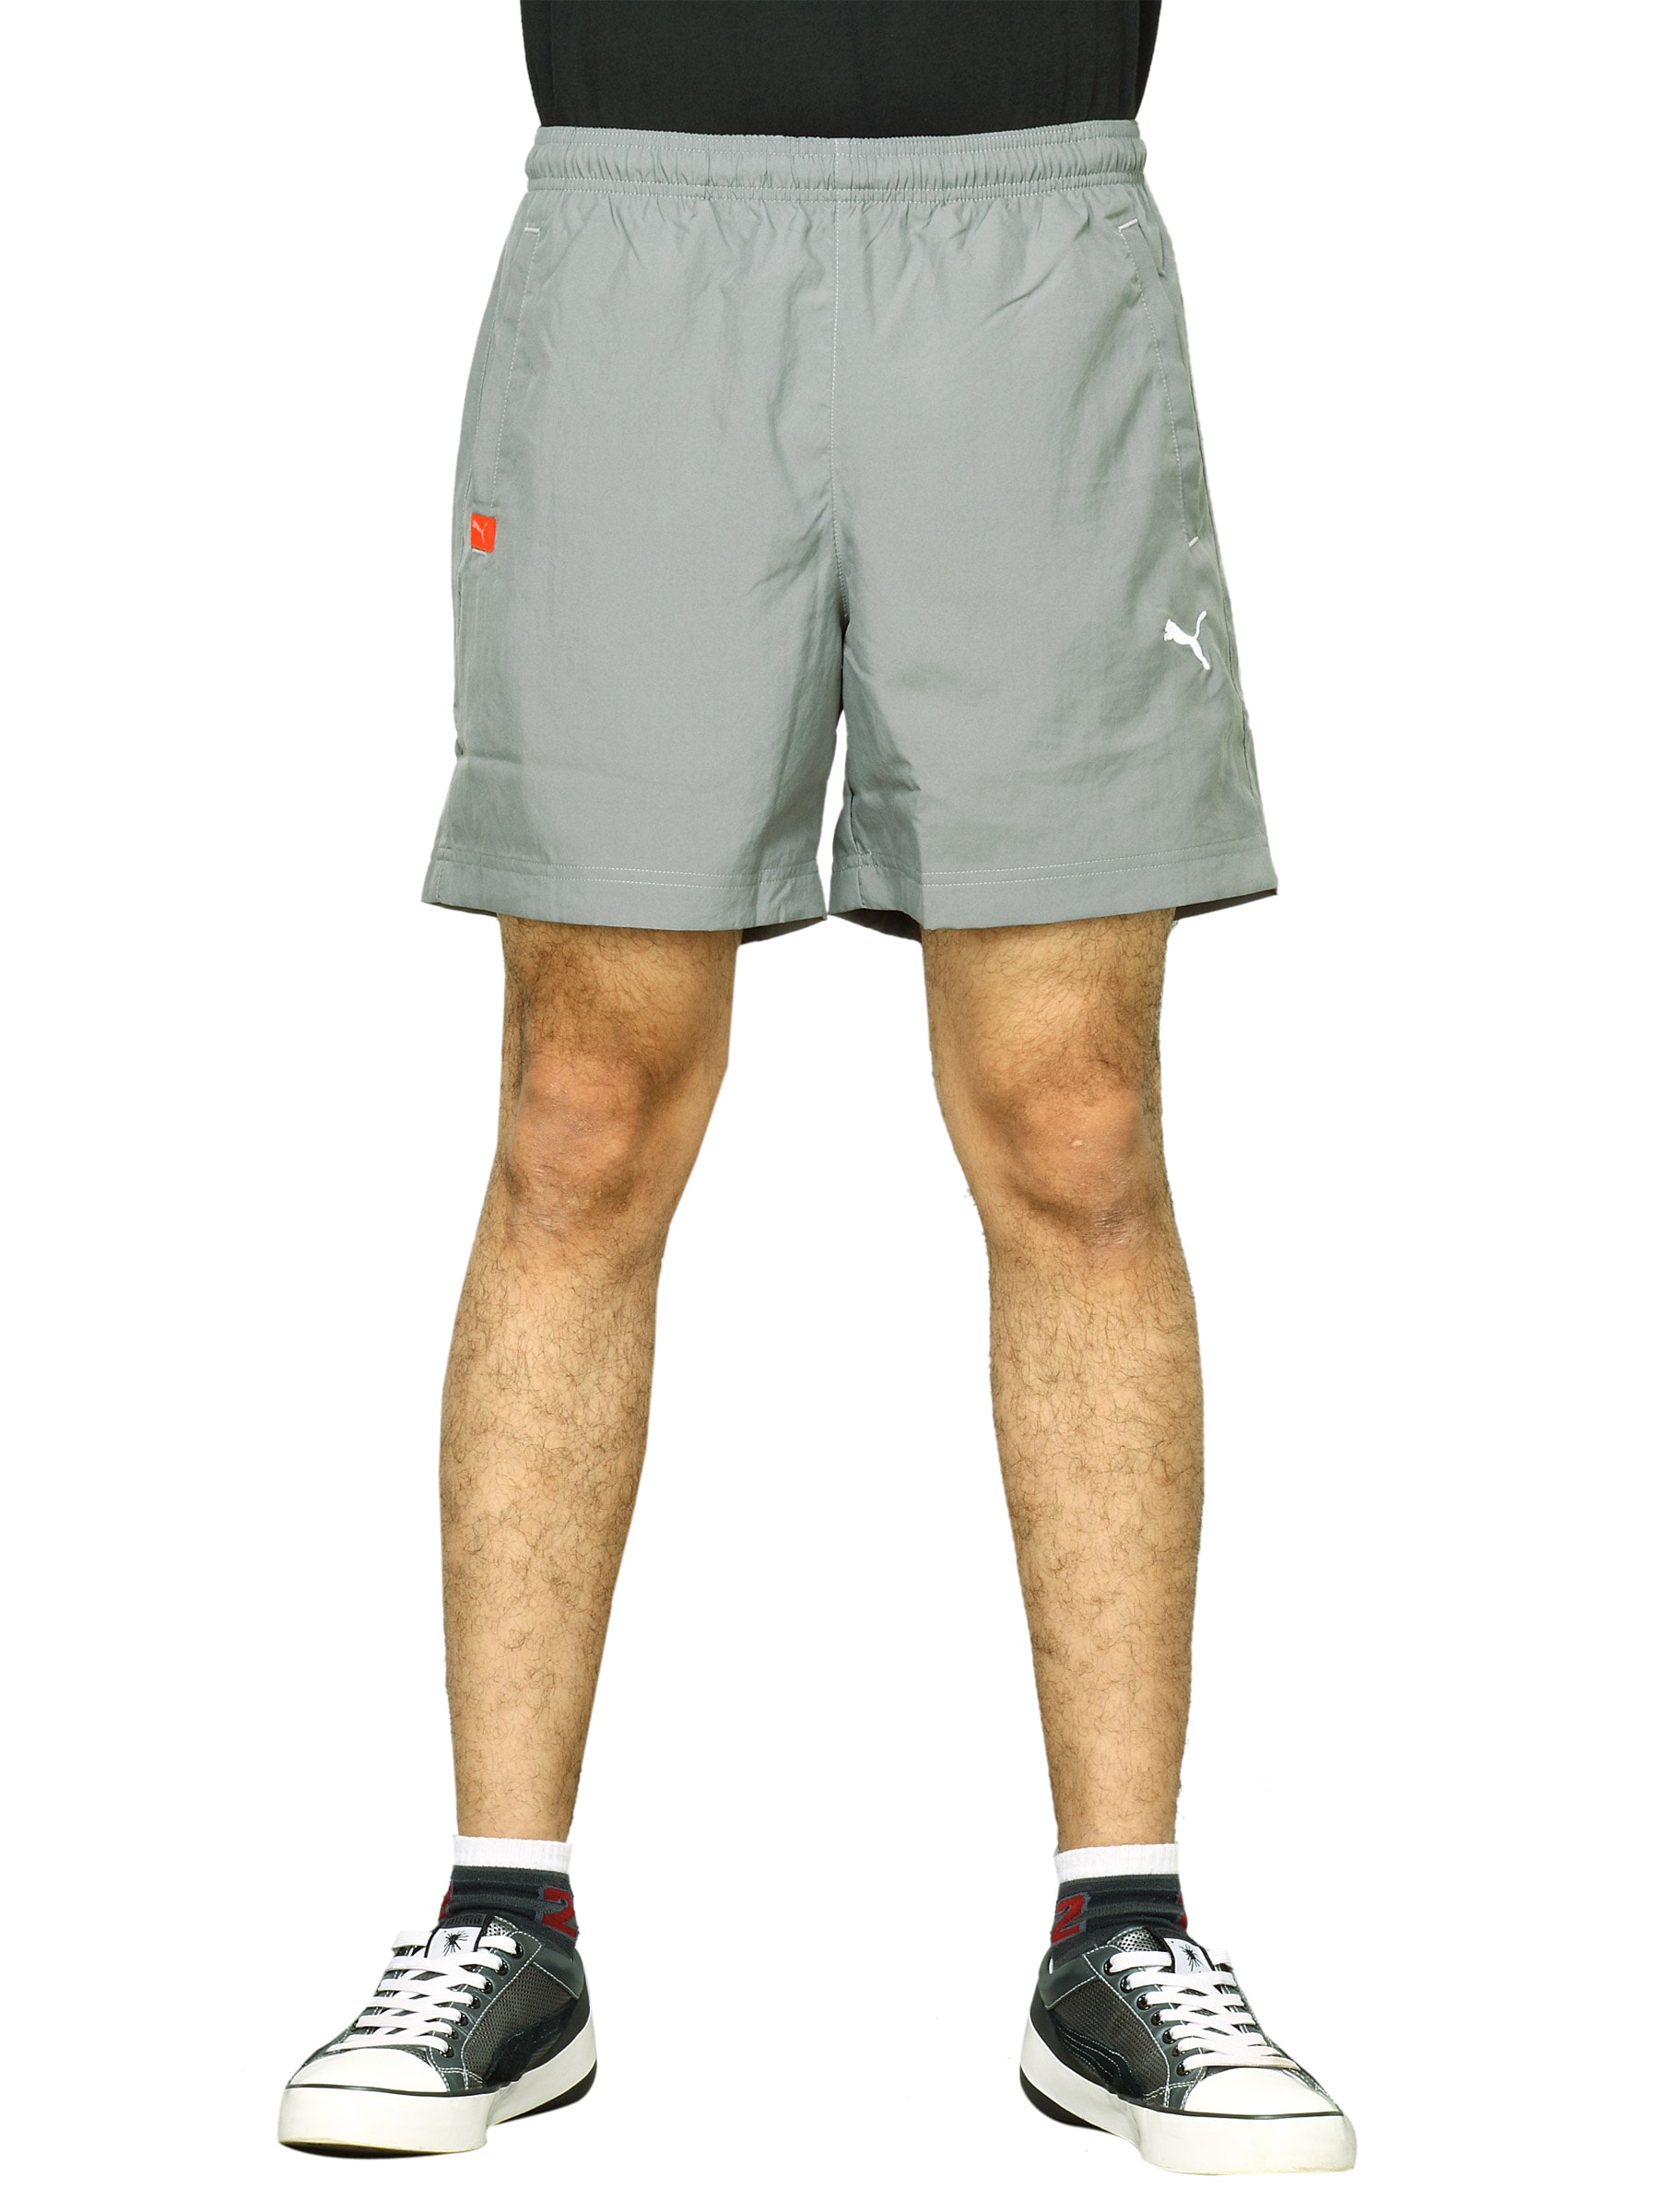 Puma Men's Ess Woven Grey Shorts